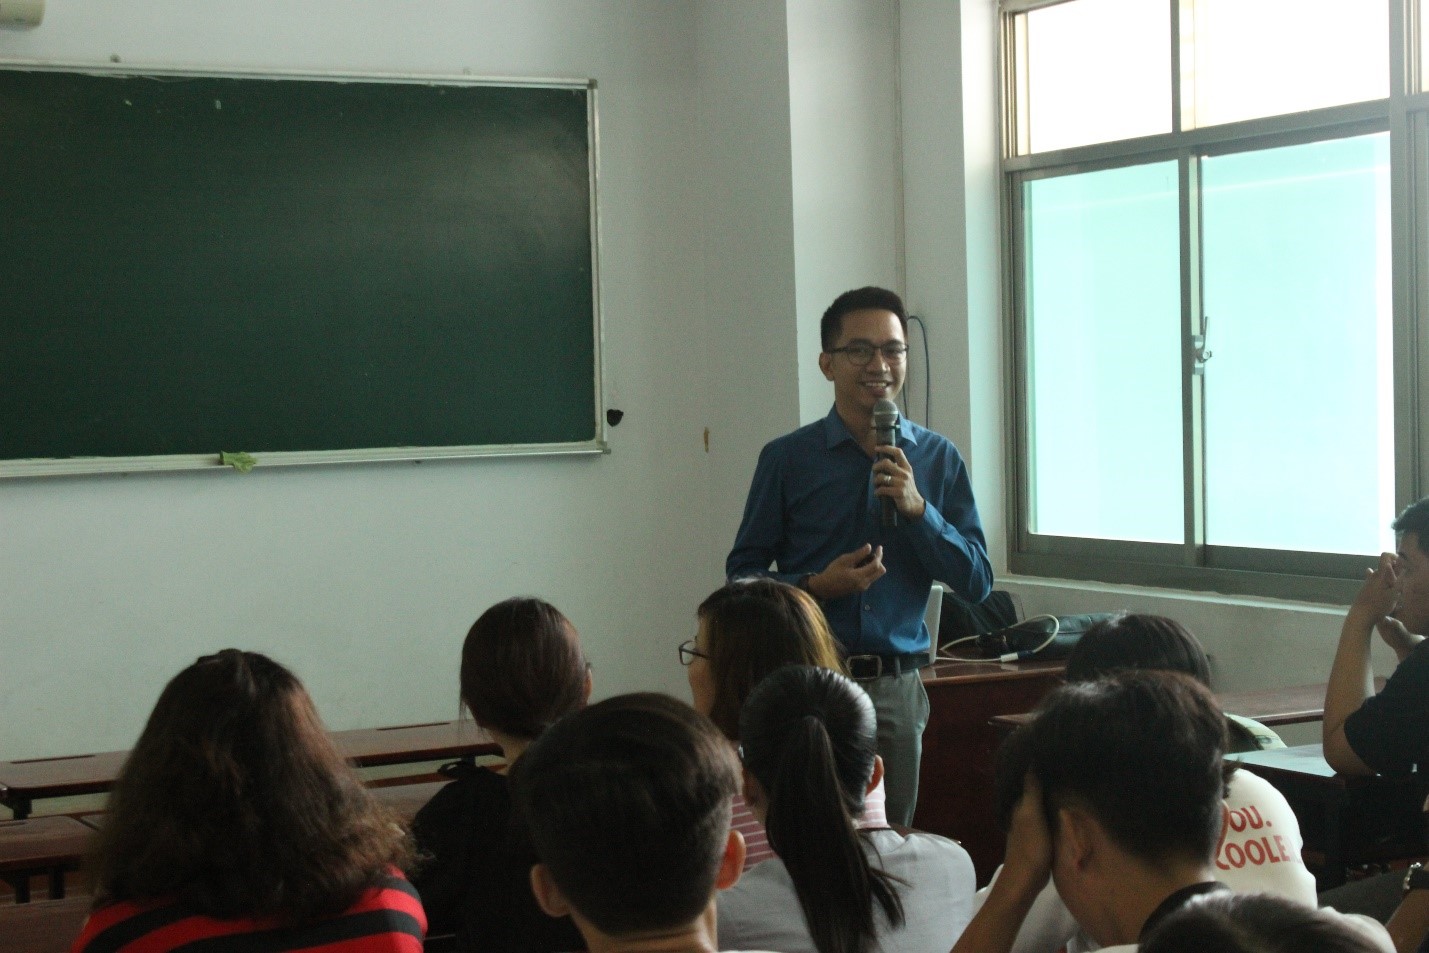 Ông Jereco trao đổi với sinh viên về những khó khăn của ông khi lần đầu làm việc tại Việt Nam và những khác biệt giữa văn hóa Việt Nam và Philippines.